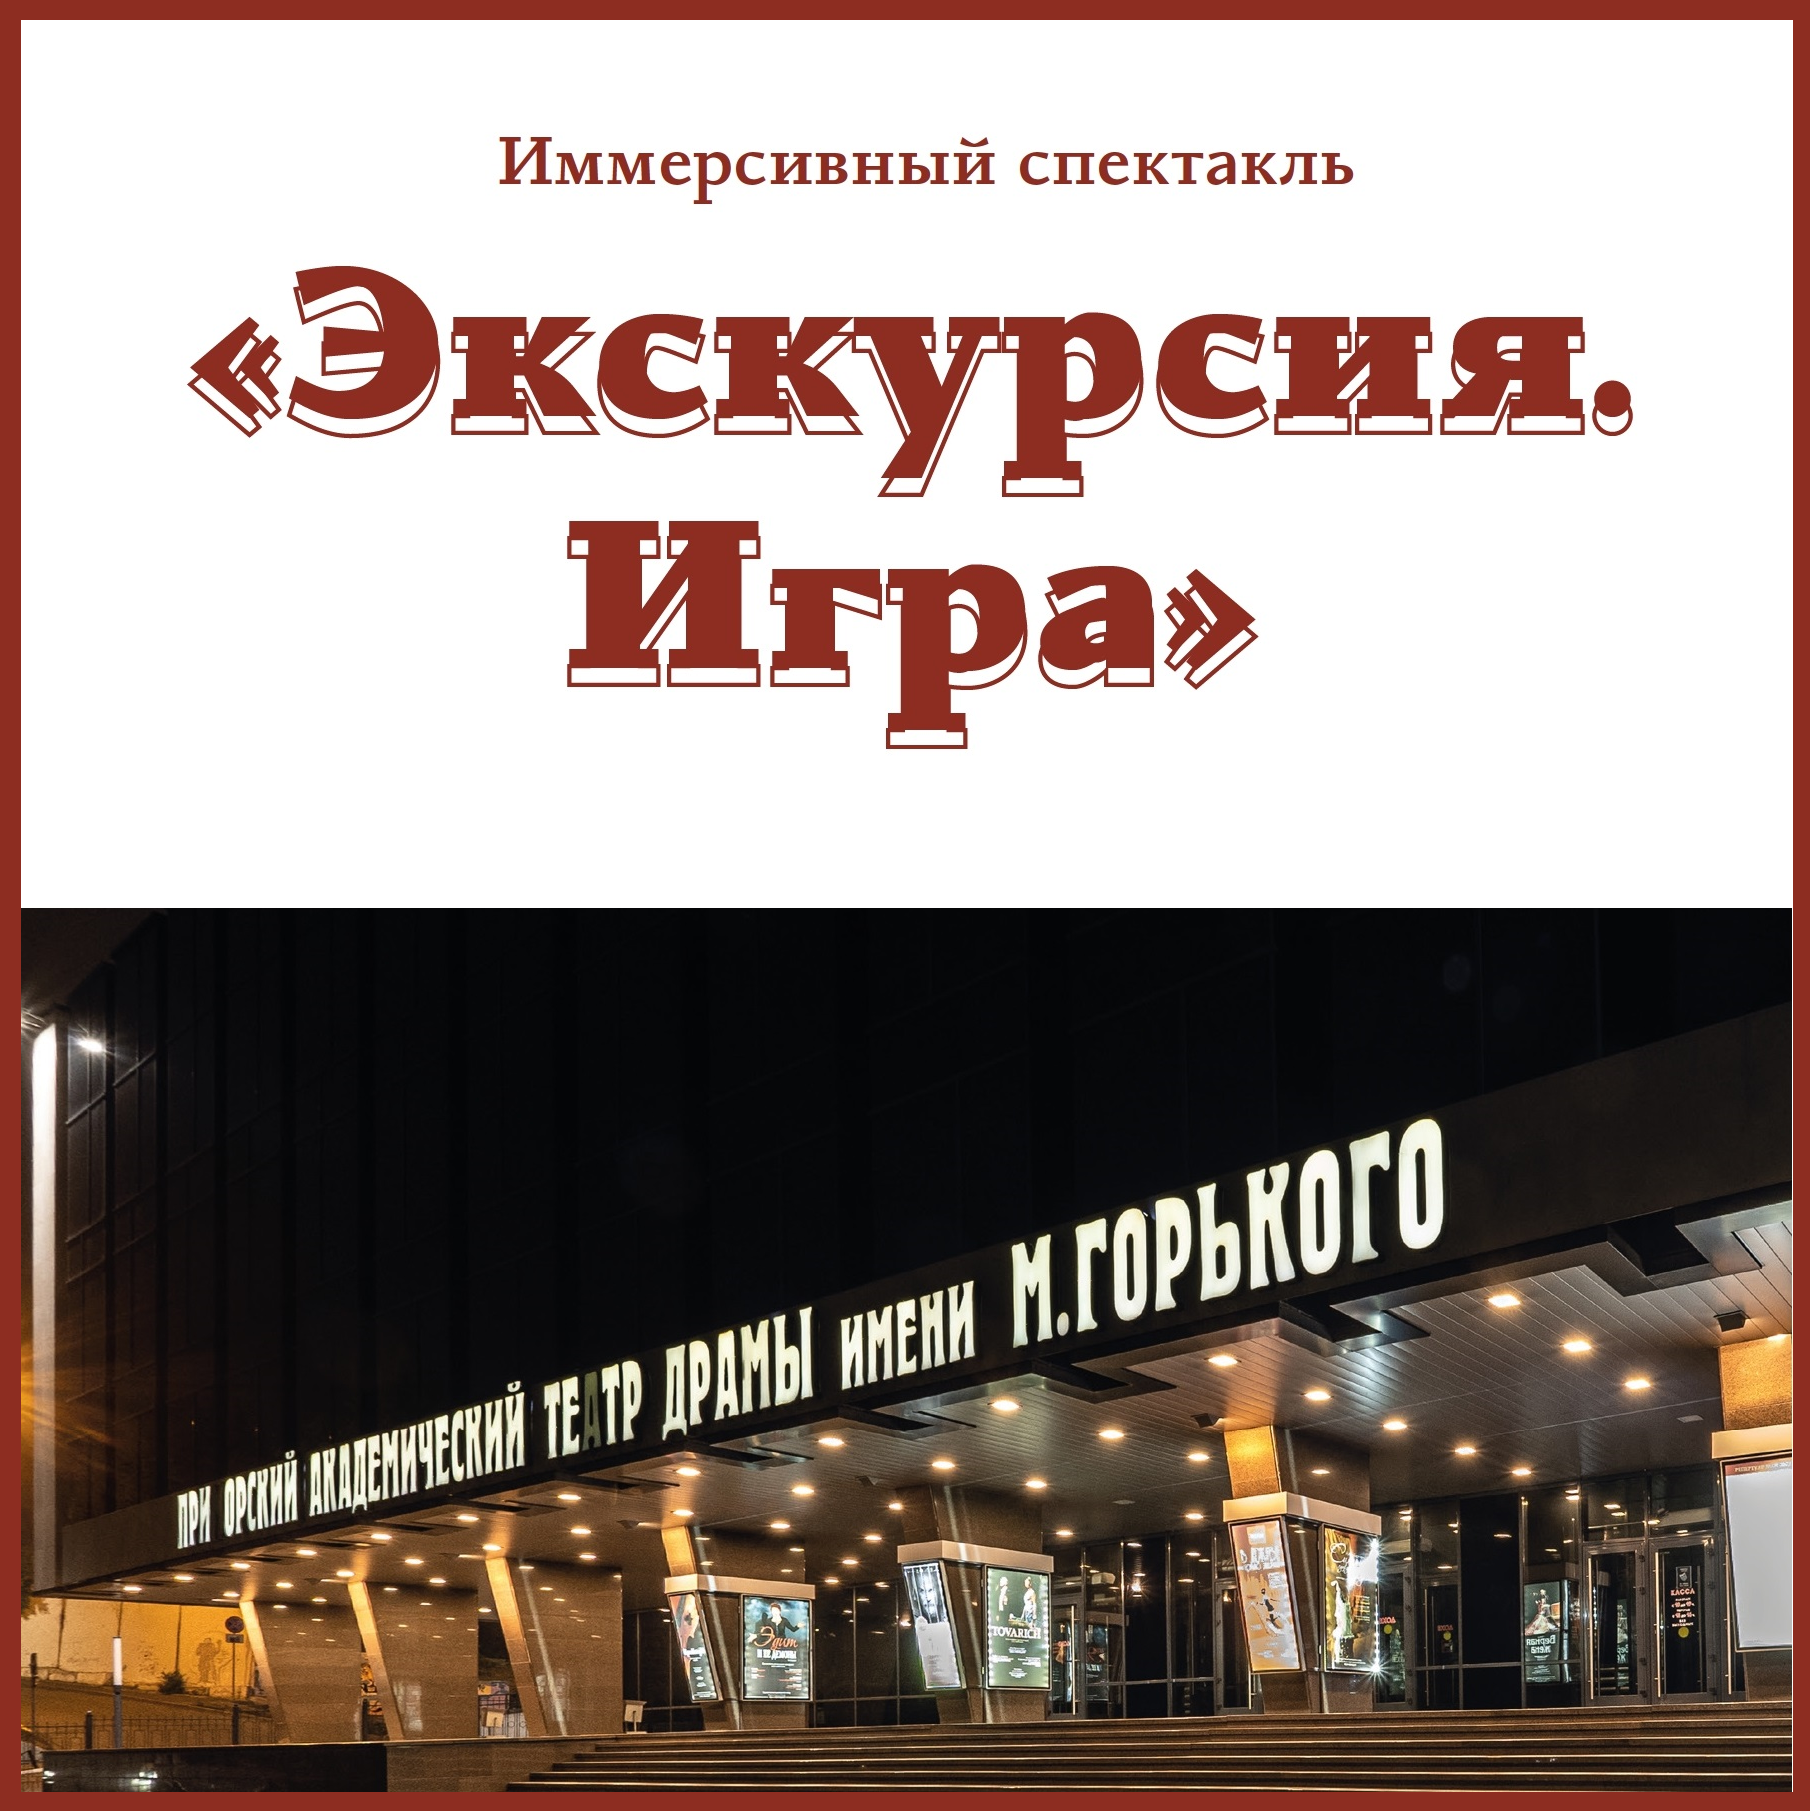 Театр имени М. Горького представляет новый проект!